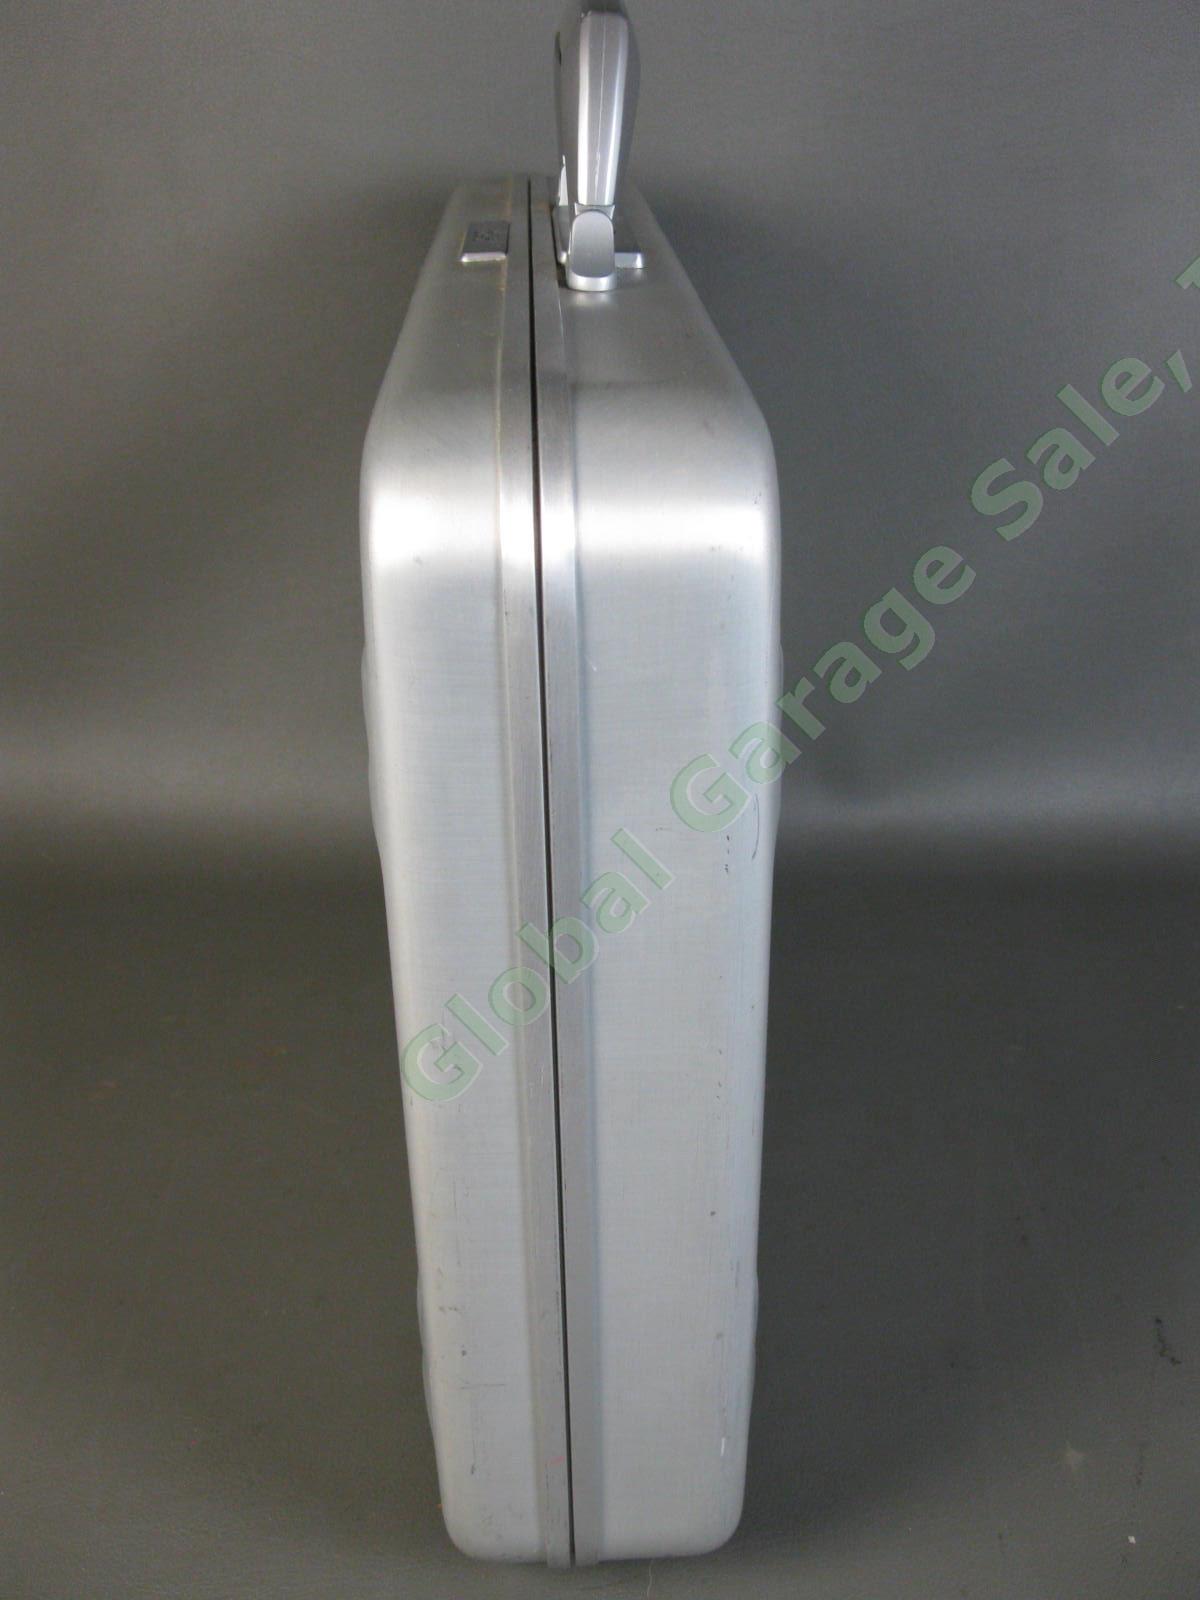 Halliburton ZERO Aluminum Briefcase 18"x13"x3" Combo Lock Excellent Condition NR 5